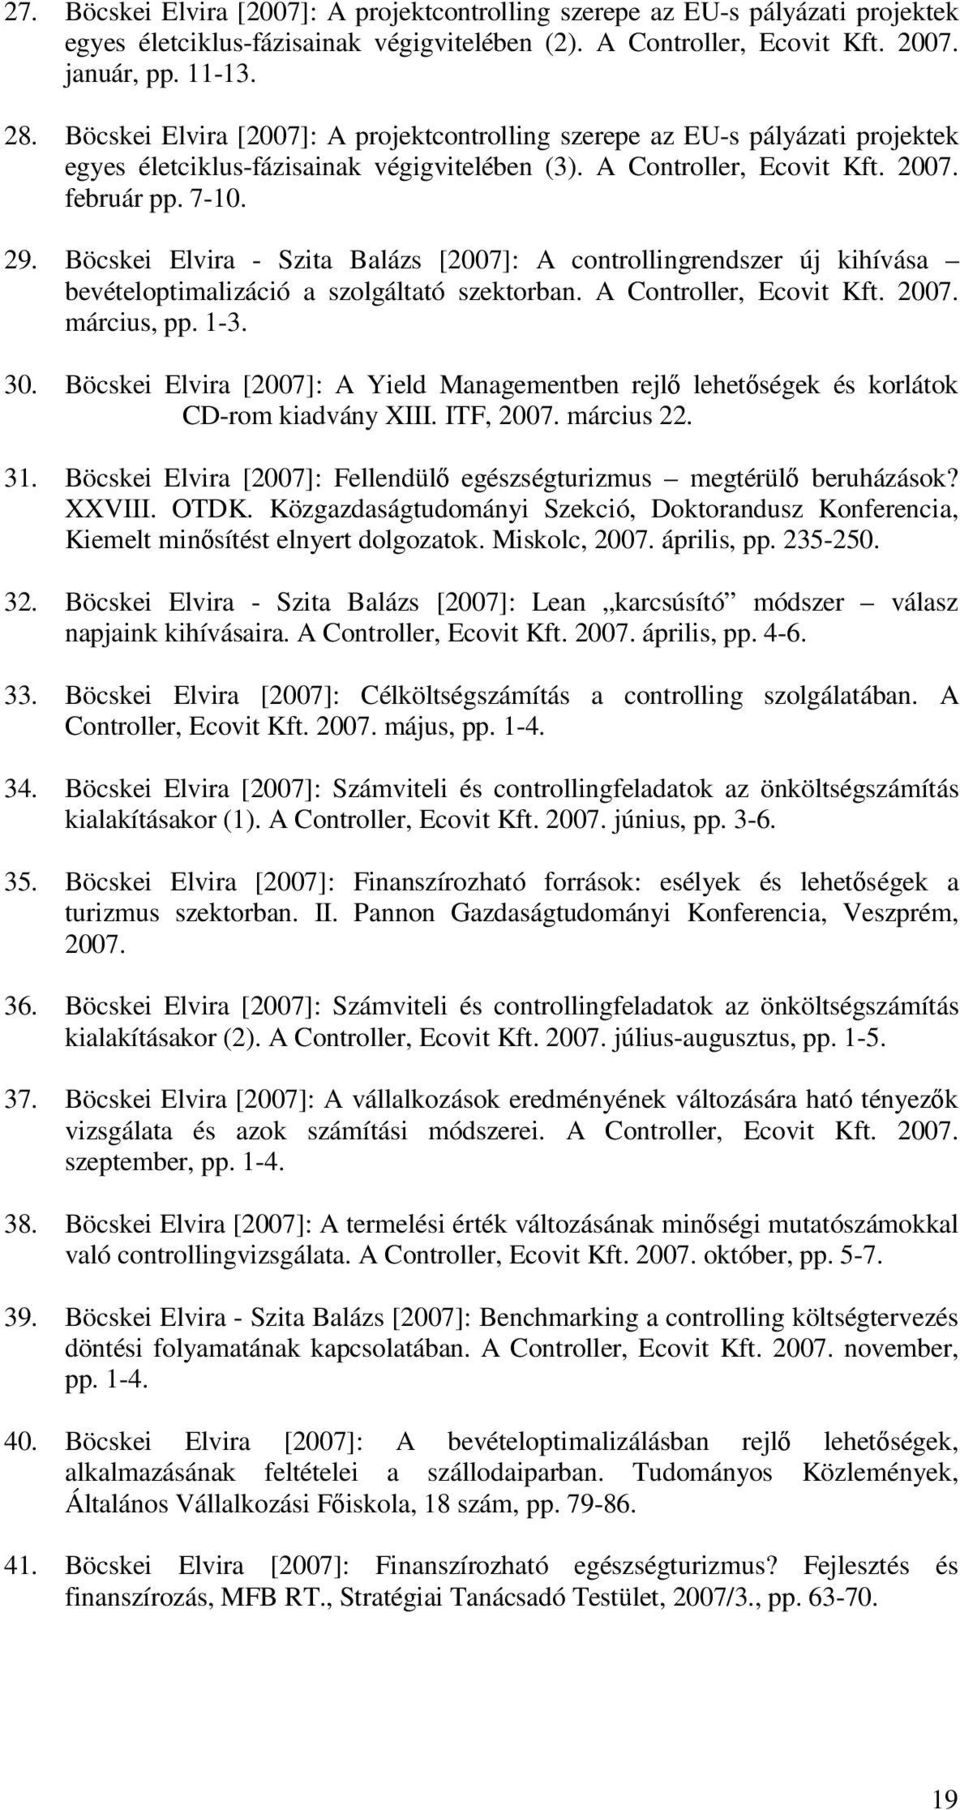 Böcskei Elvira - Szita Balázs [2007]: A controllingrendszer új kihívása bevételoptimalizáció a szolgáltató szektorban. A Controller, Ecovit Kft. 2007. március, pp. 1-3. 30.